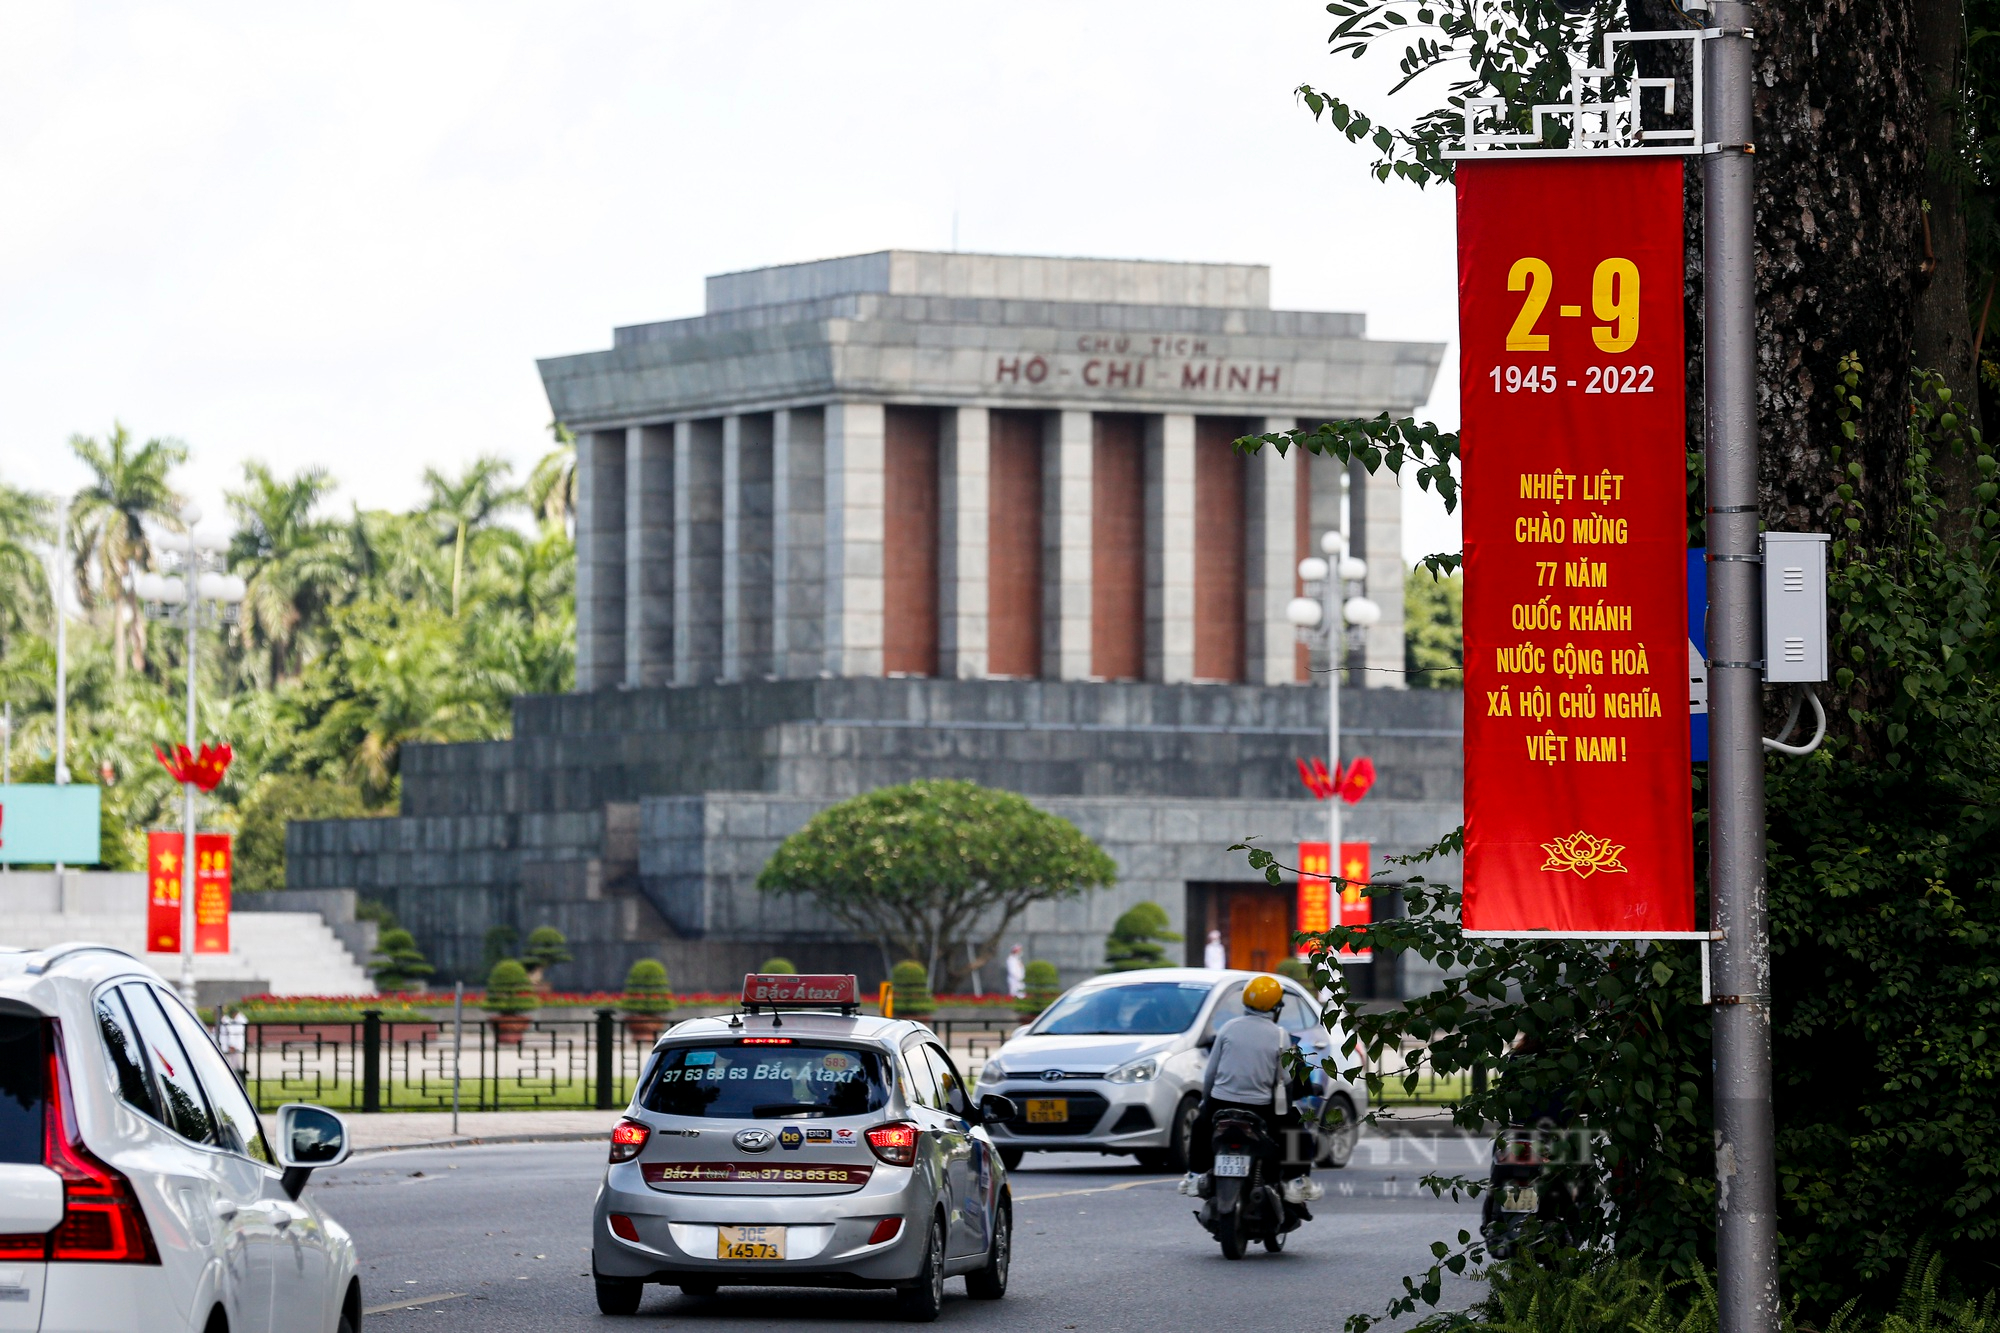 Đường phố Hà Nội rực màu cờ đỏ thắm chào mừng ngày Quốc khánh 2/9 - Ảnh 2.